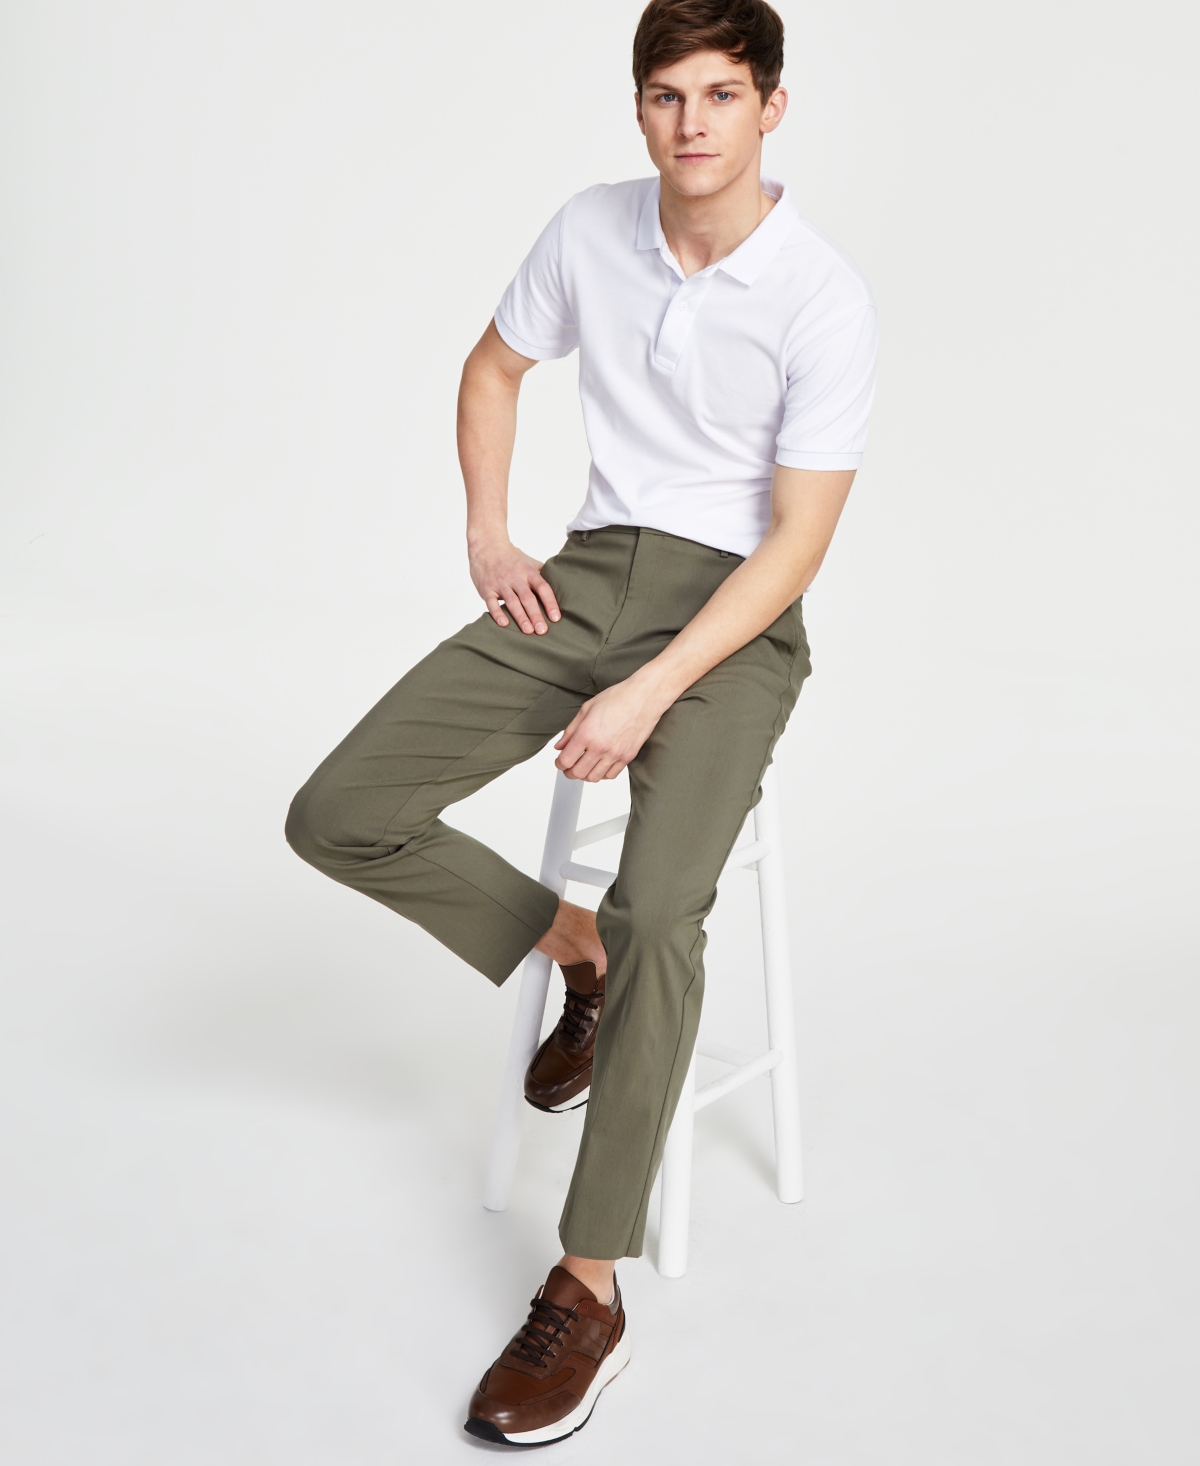 Tommy Hilfiger Men's Modern-Fit Flex Stretch Comfort Solid Performance Pants | Smart